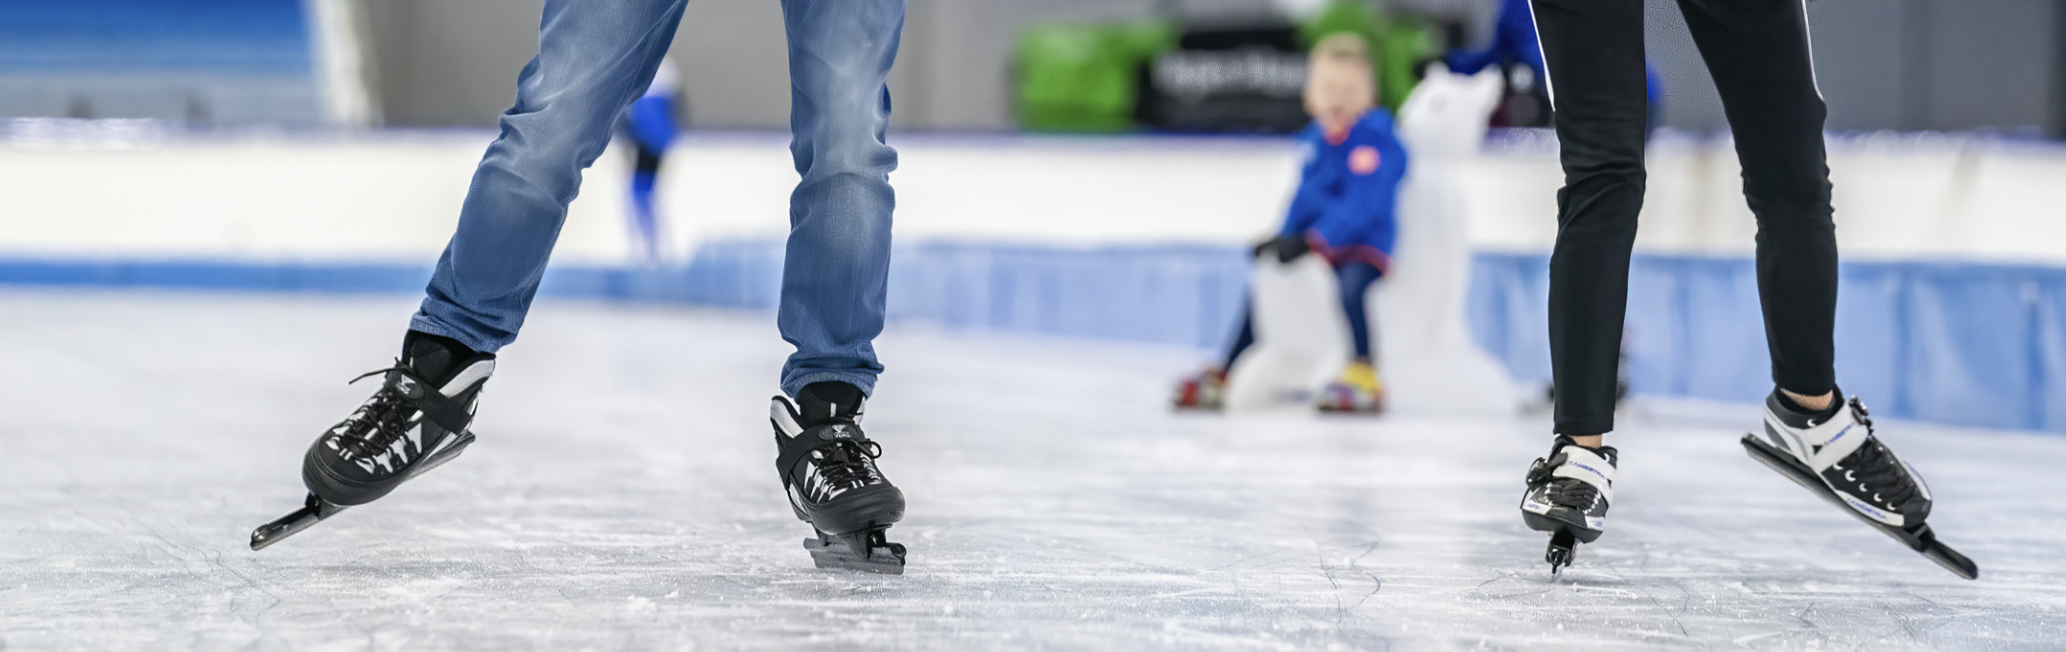 Zandstra schaatsen op de ijsbaan .png